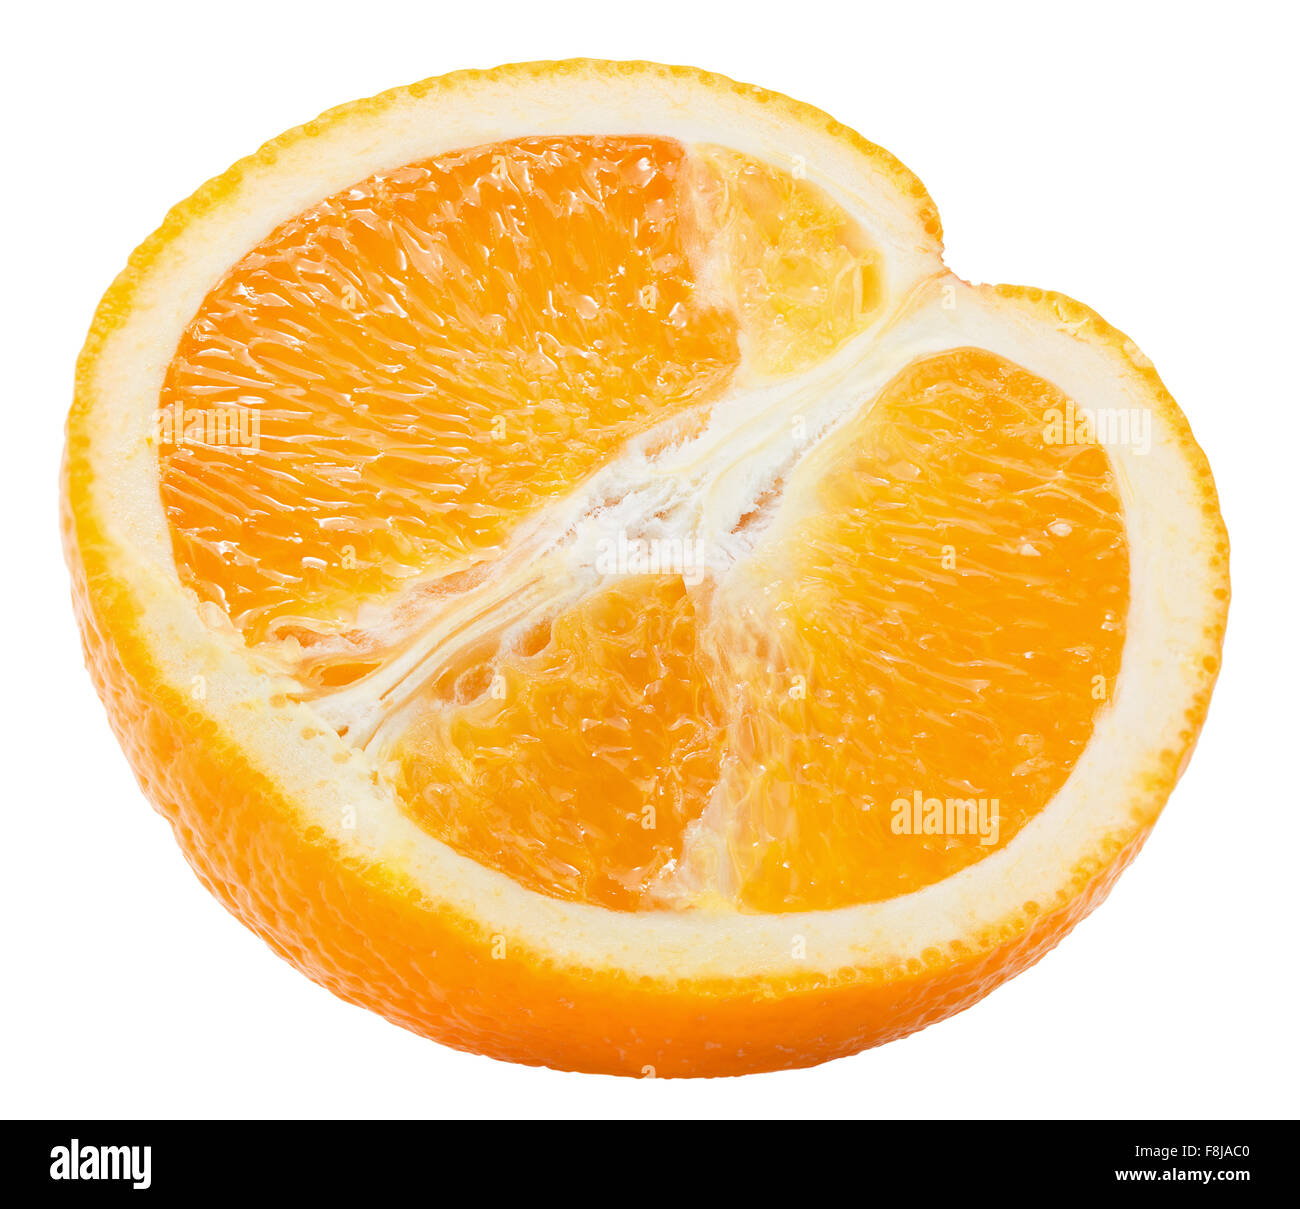 half of orange isolated on the white background. Stock Photo